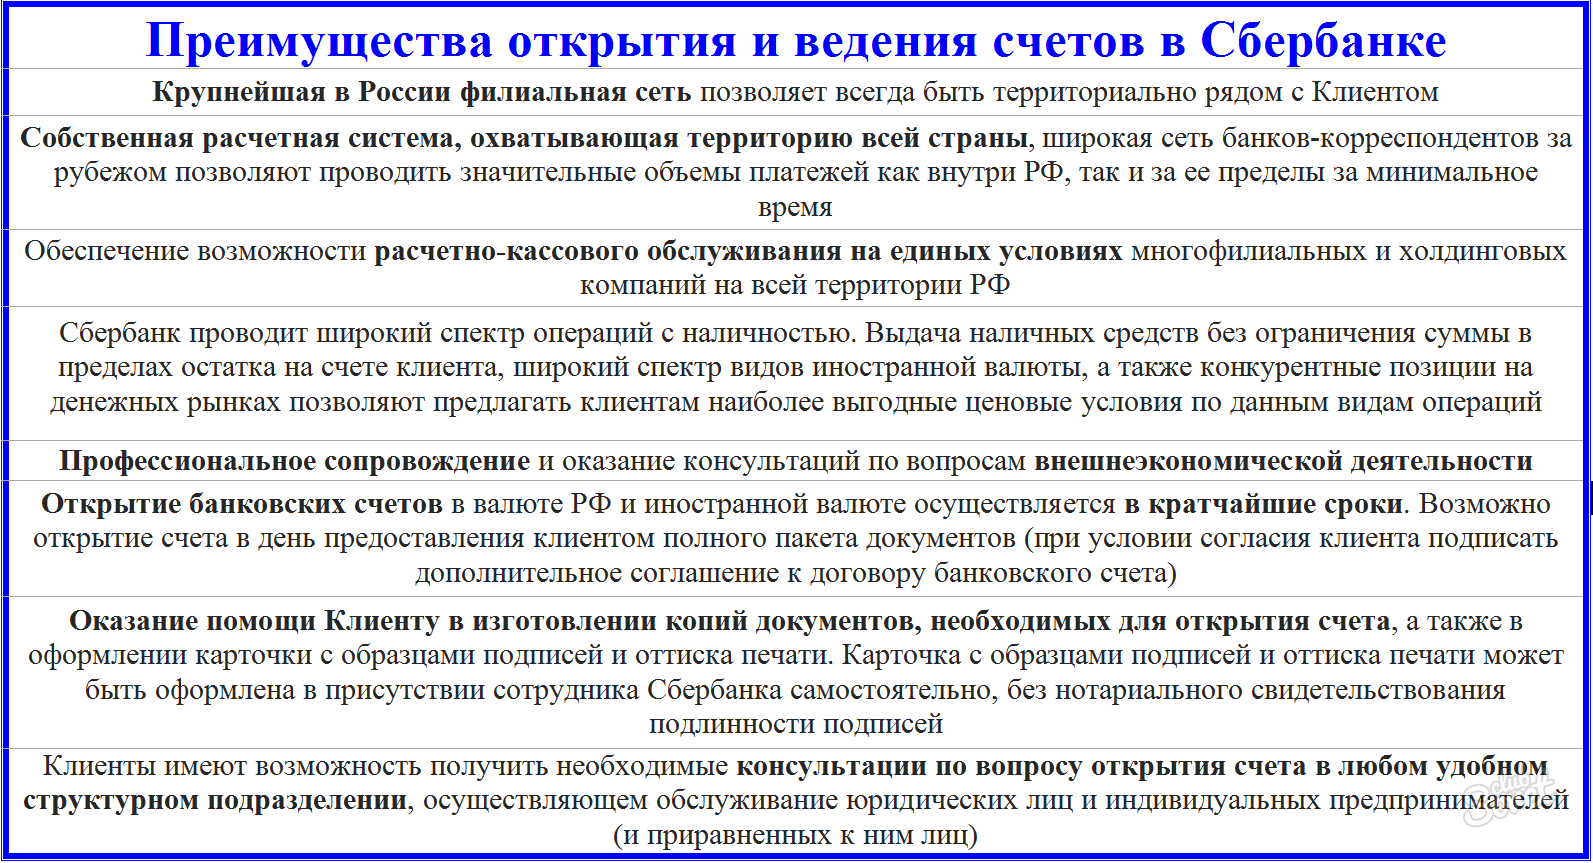 Koristi storitve v Sberbank